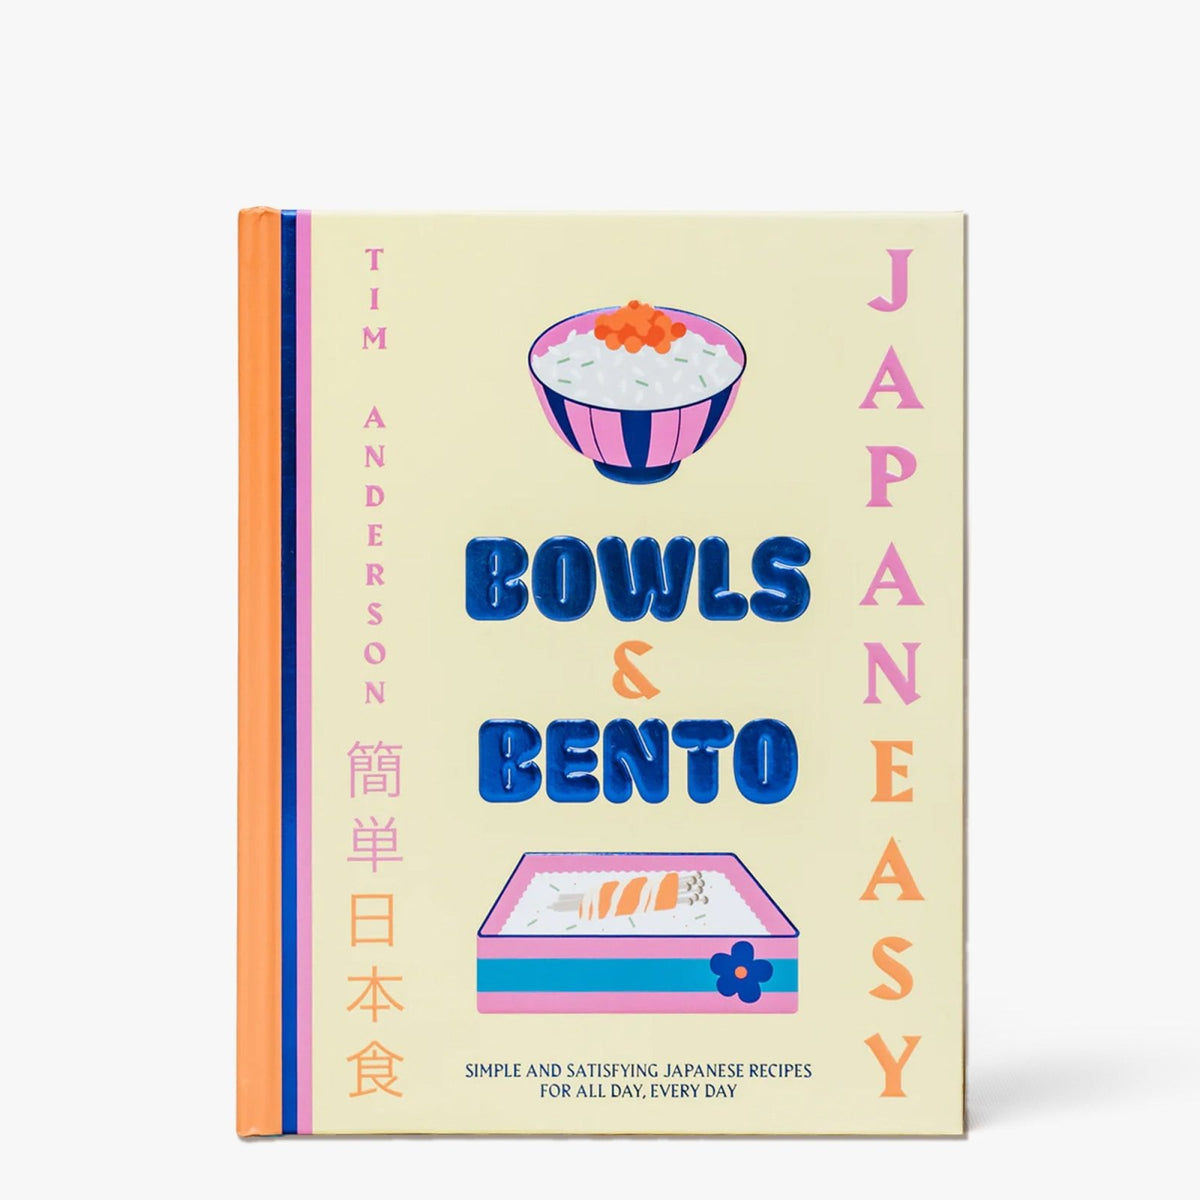 Bowls &amp; Bento. Des recettes japonaises simples et délicieuses pour tous les jours - Hachette Pratique - iRASSHAi